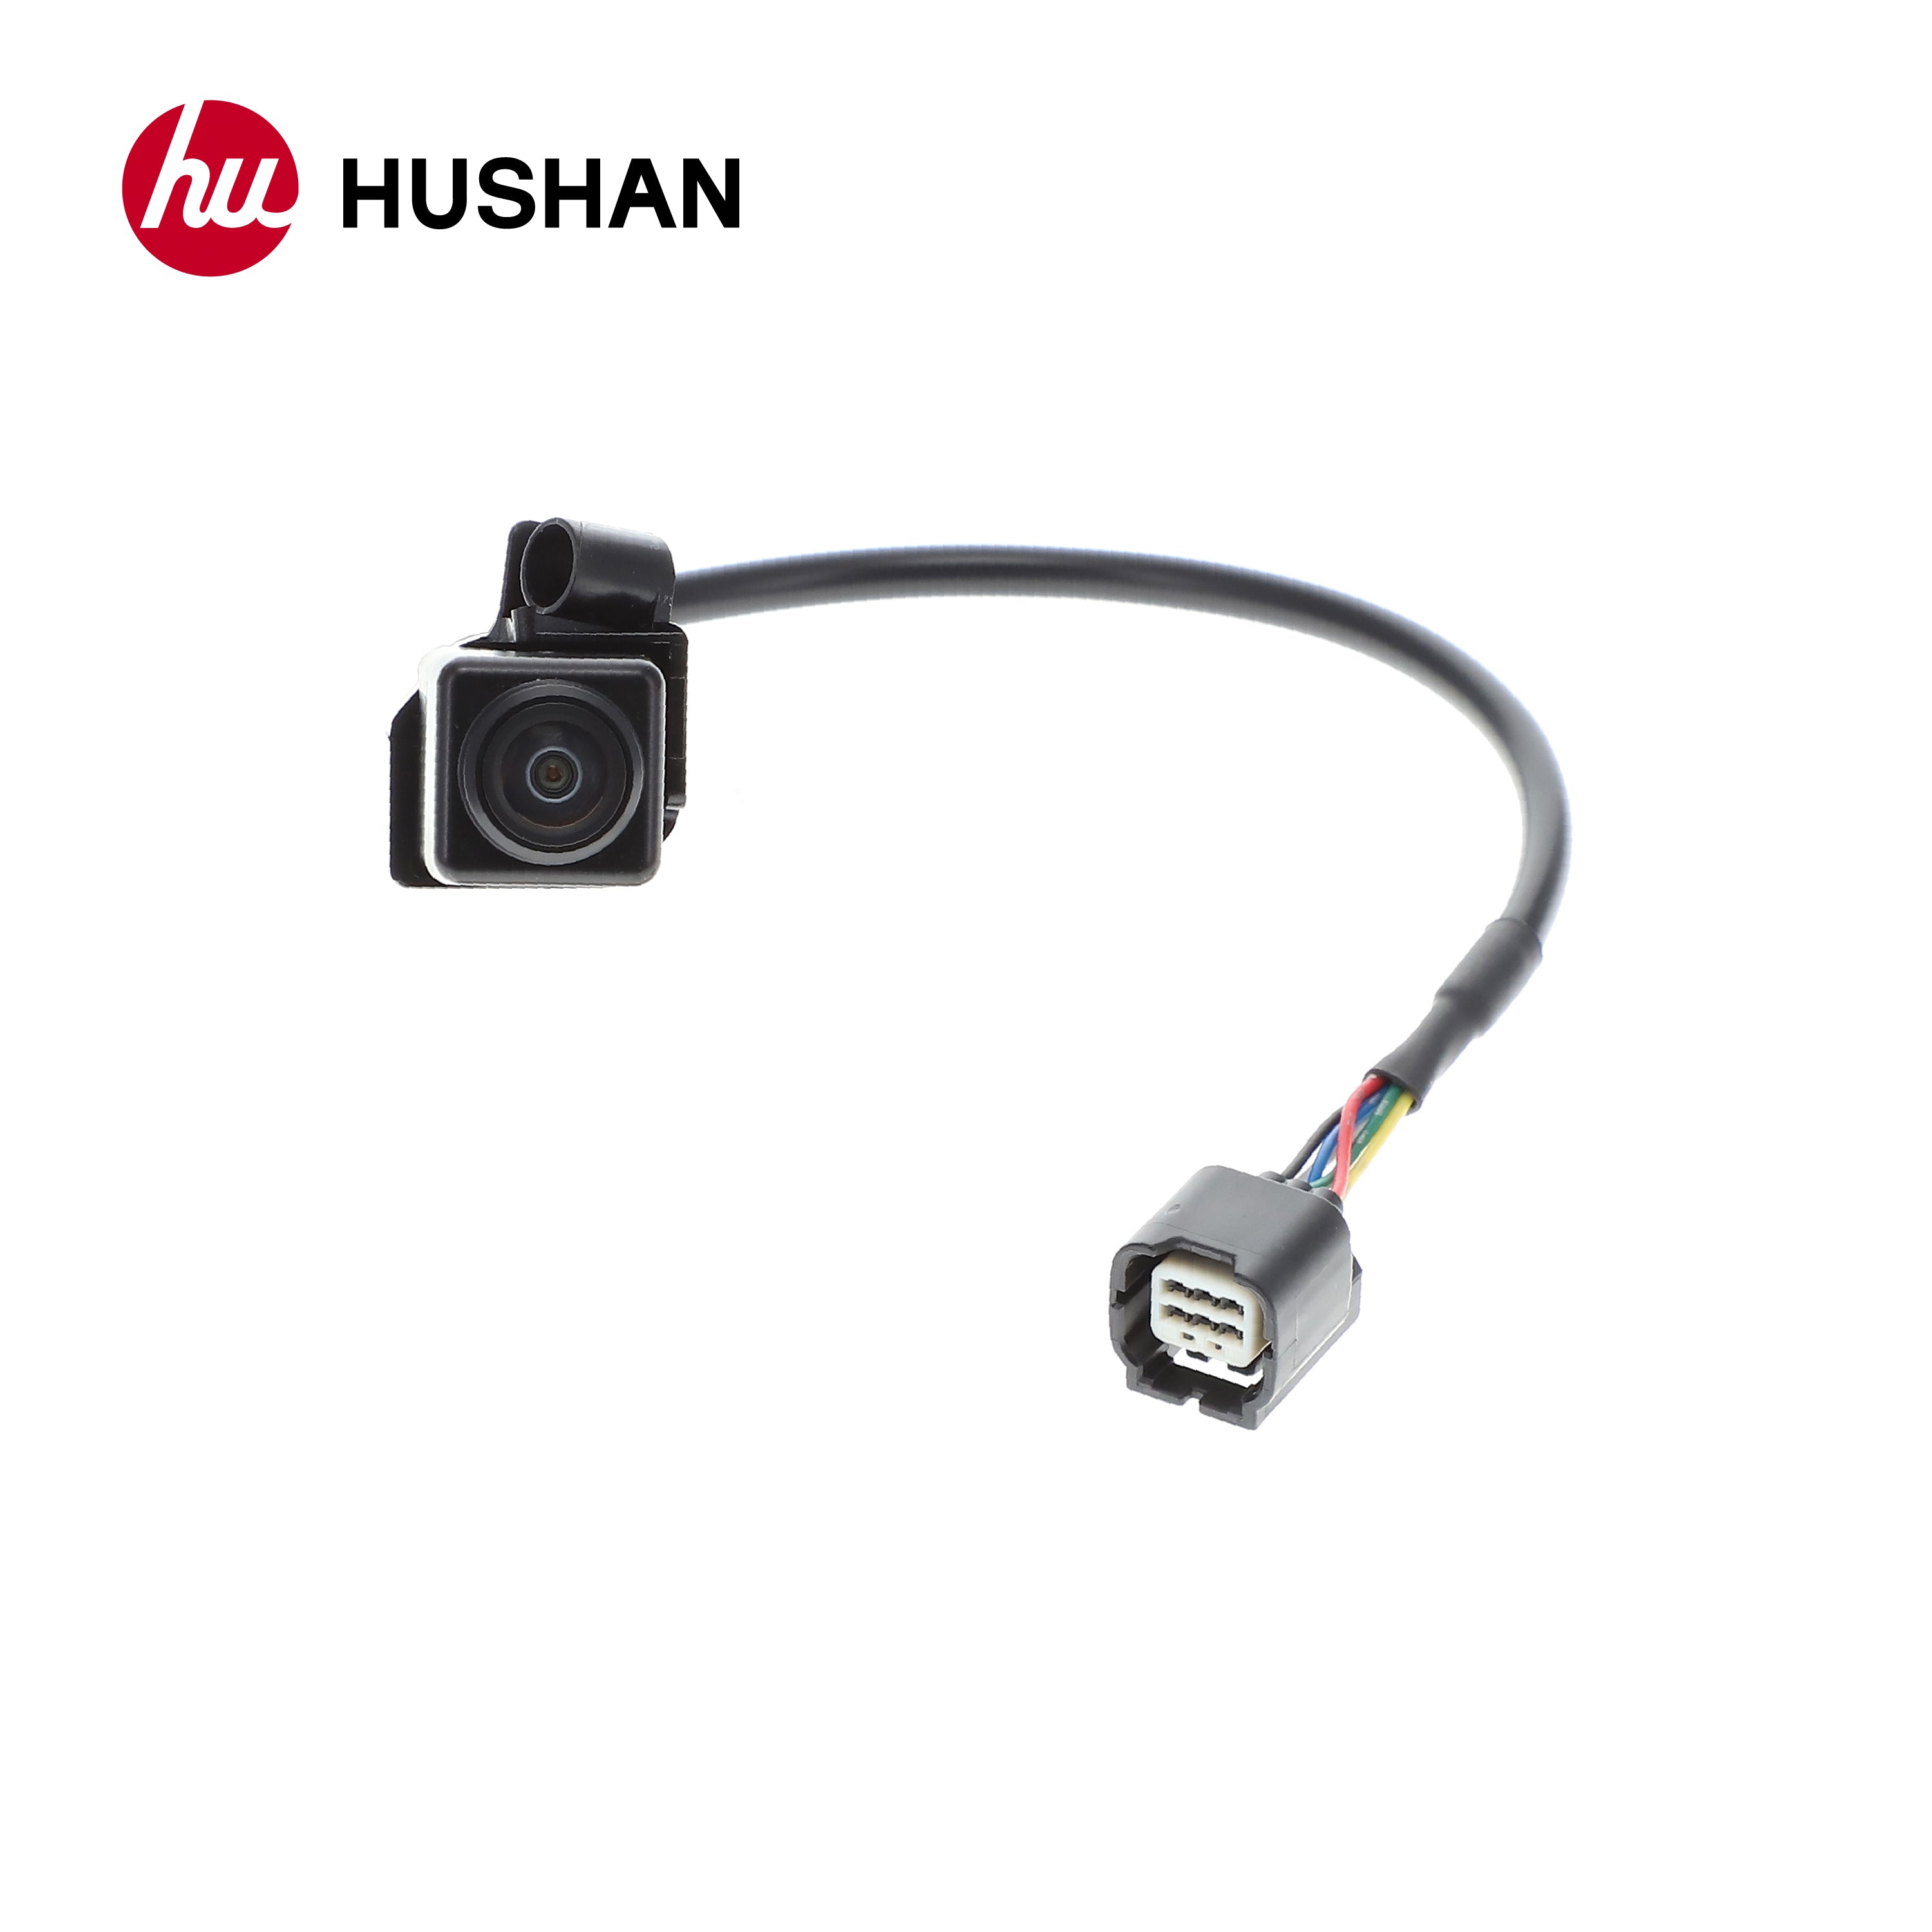 HU-HDL300-OE